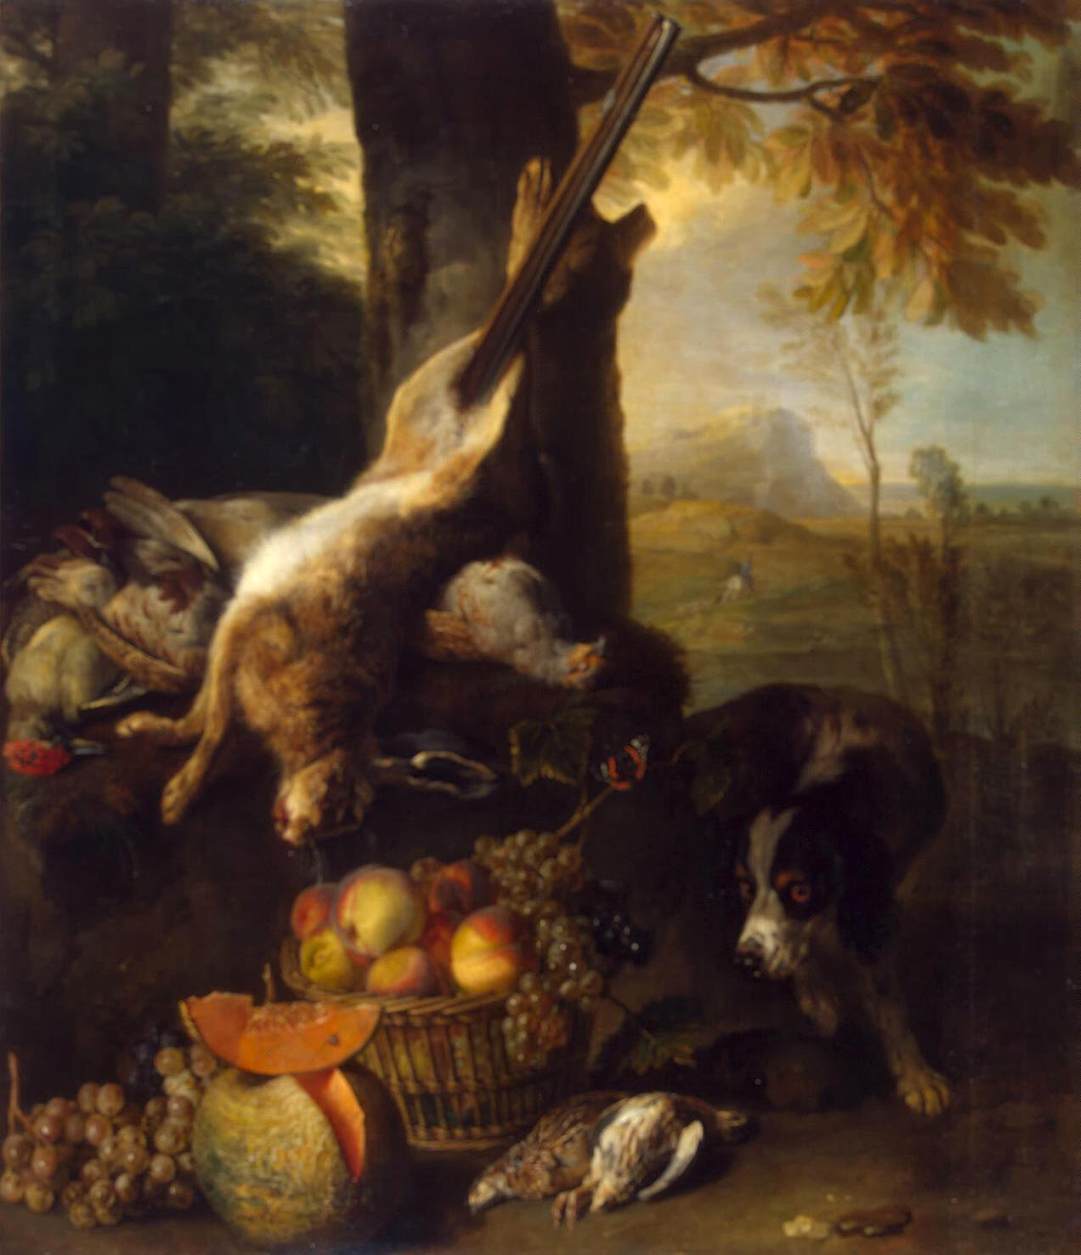 Bodegón avec des liènes et des fruits morts